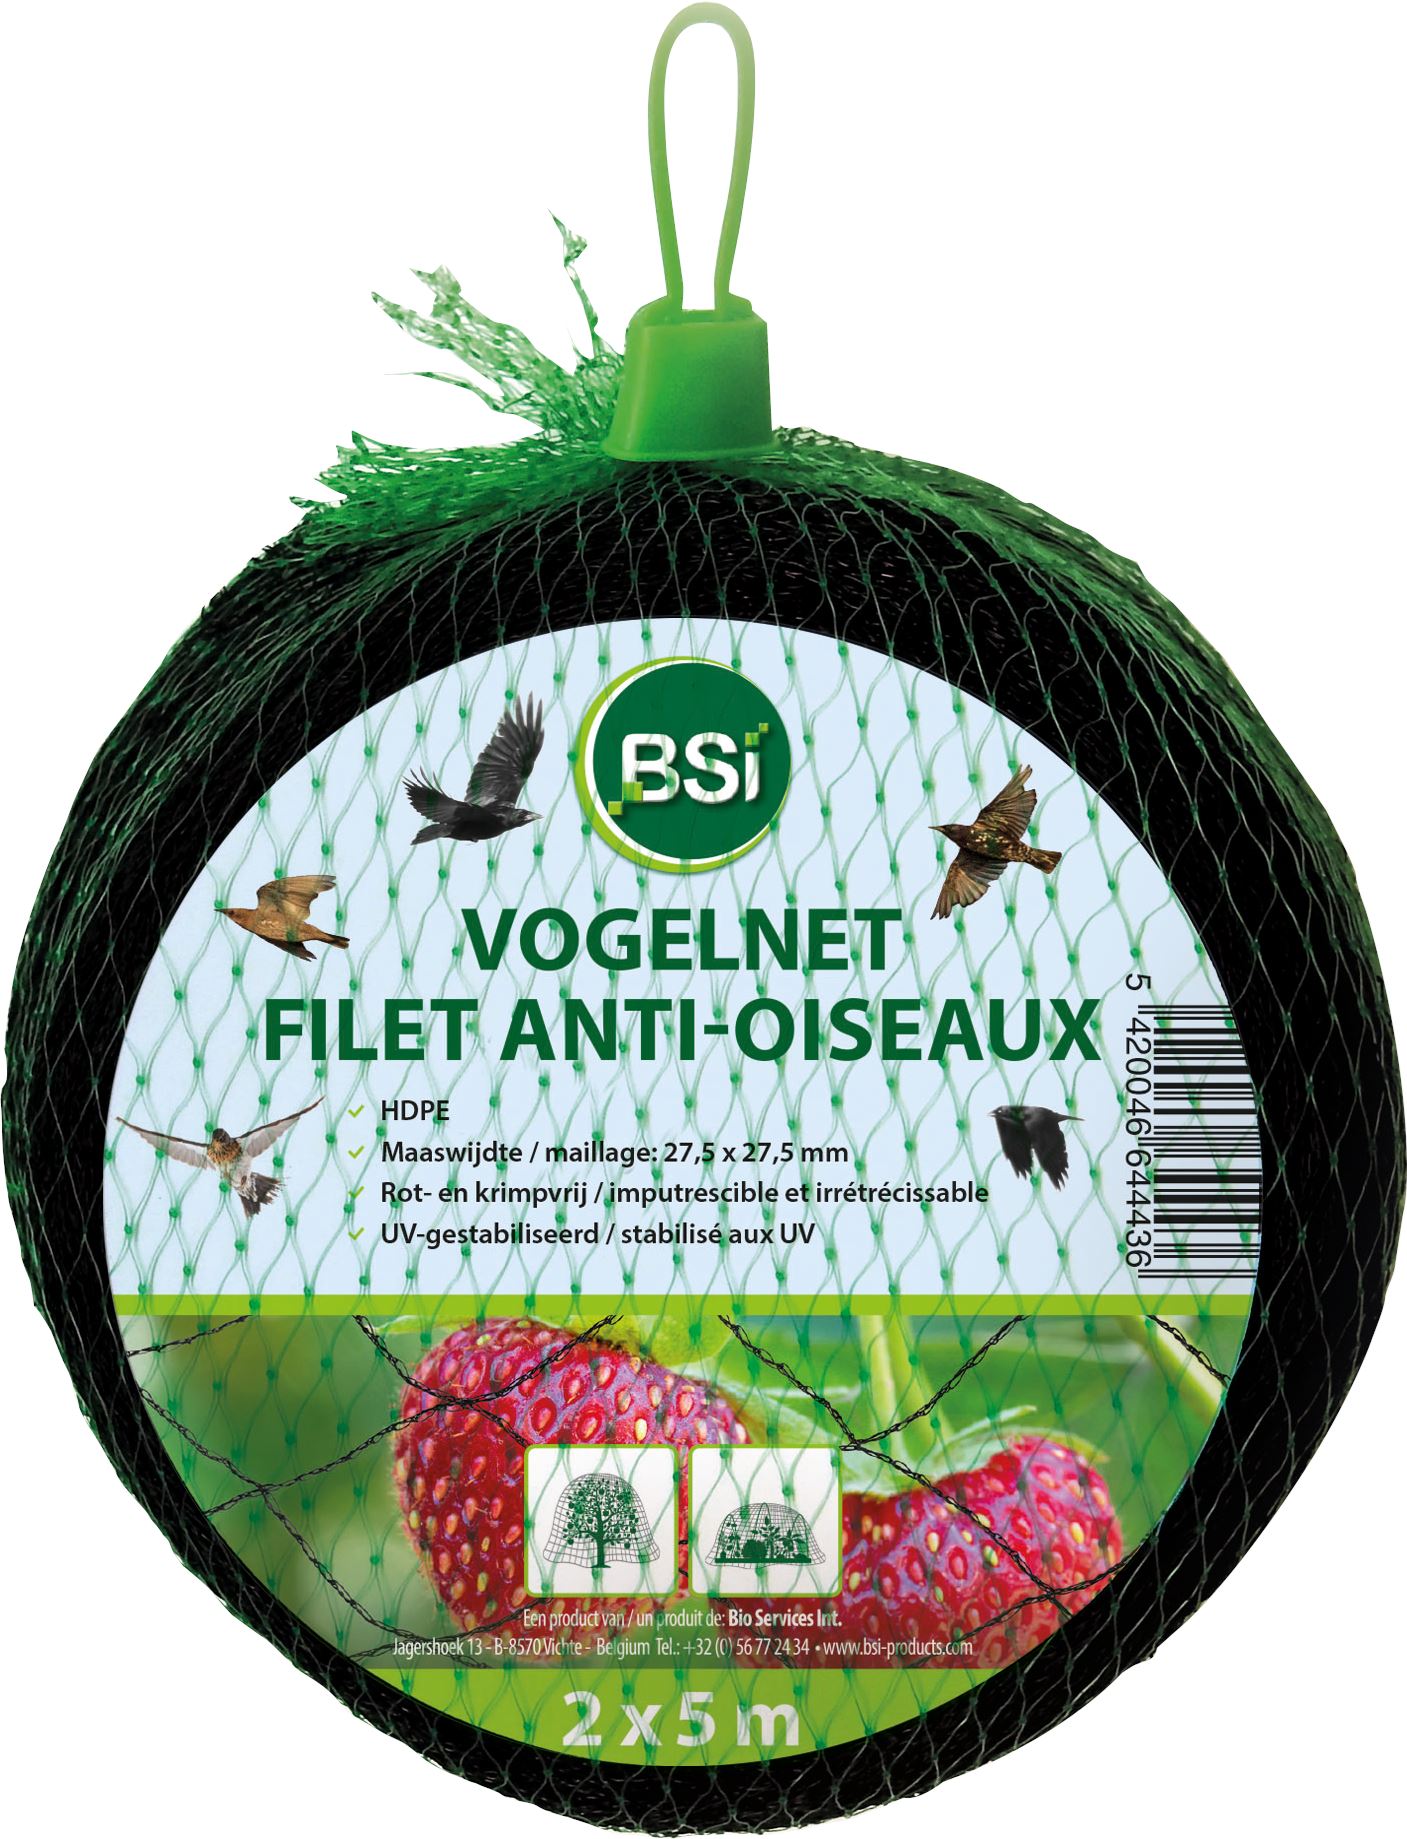 Vogelnet-BSI-2x5M